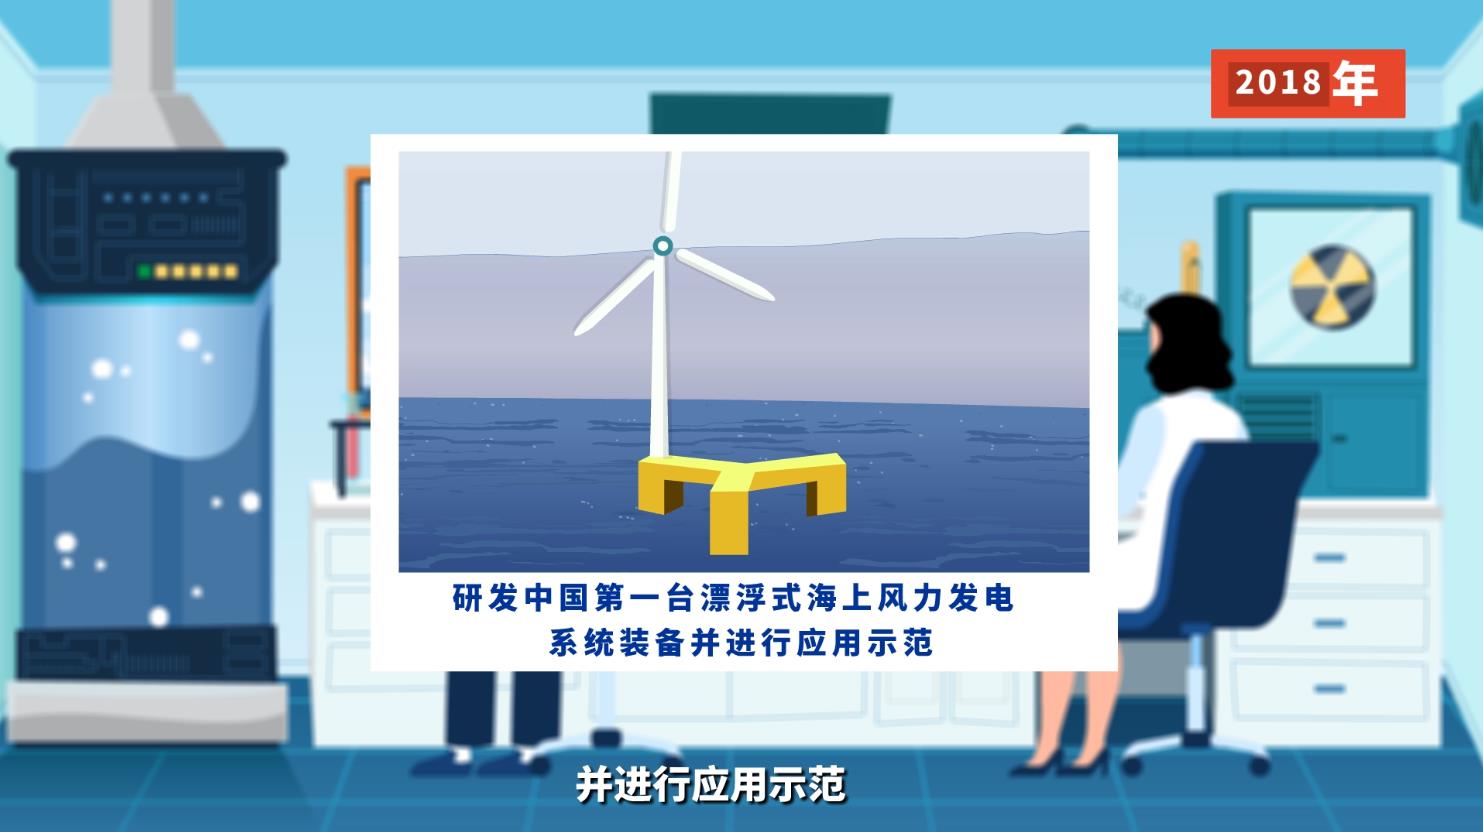 大风车滴溜溜地转 清洁能源这样从海上来